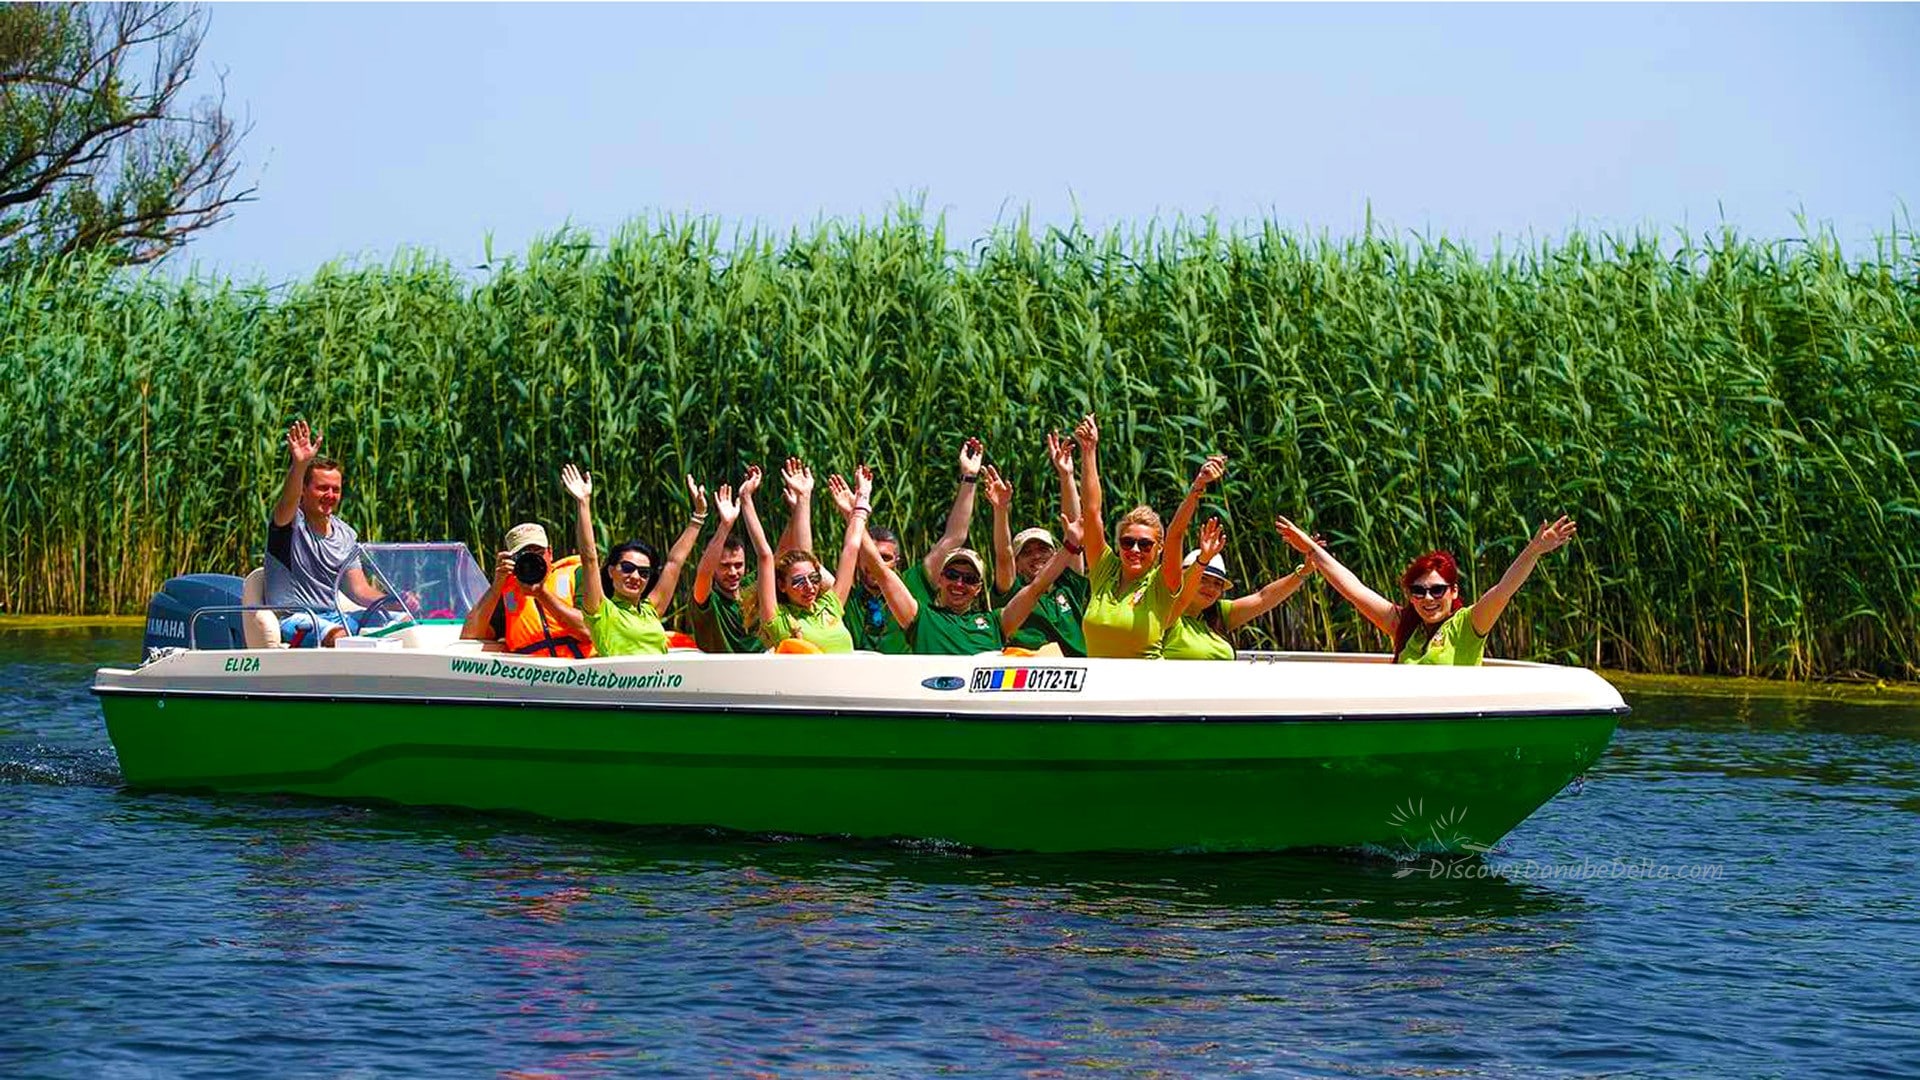 Danube Delta Boat Trip